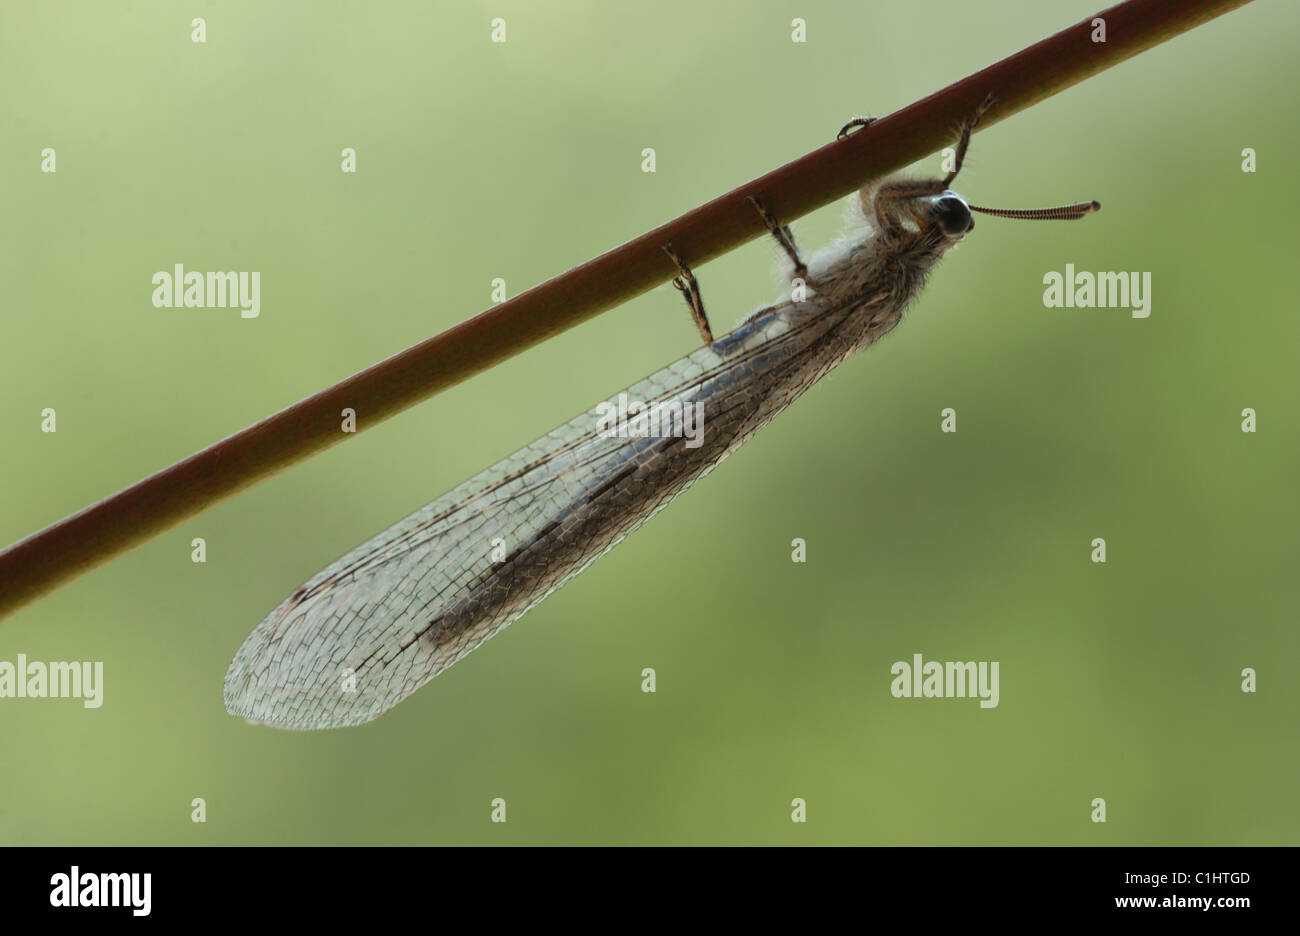 Die Insekten Bestellung Entomologen oder Net geflügelten Insekten, enthält die Florfliegen Stockfoto